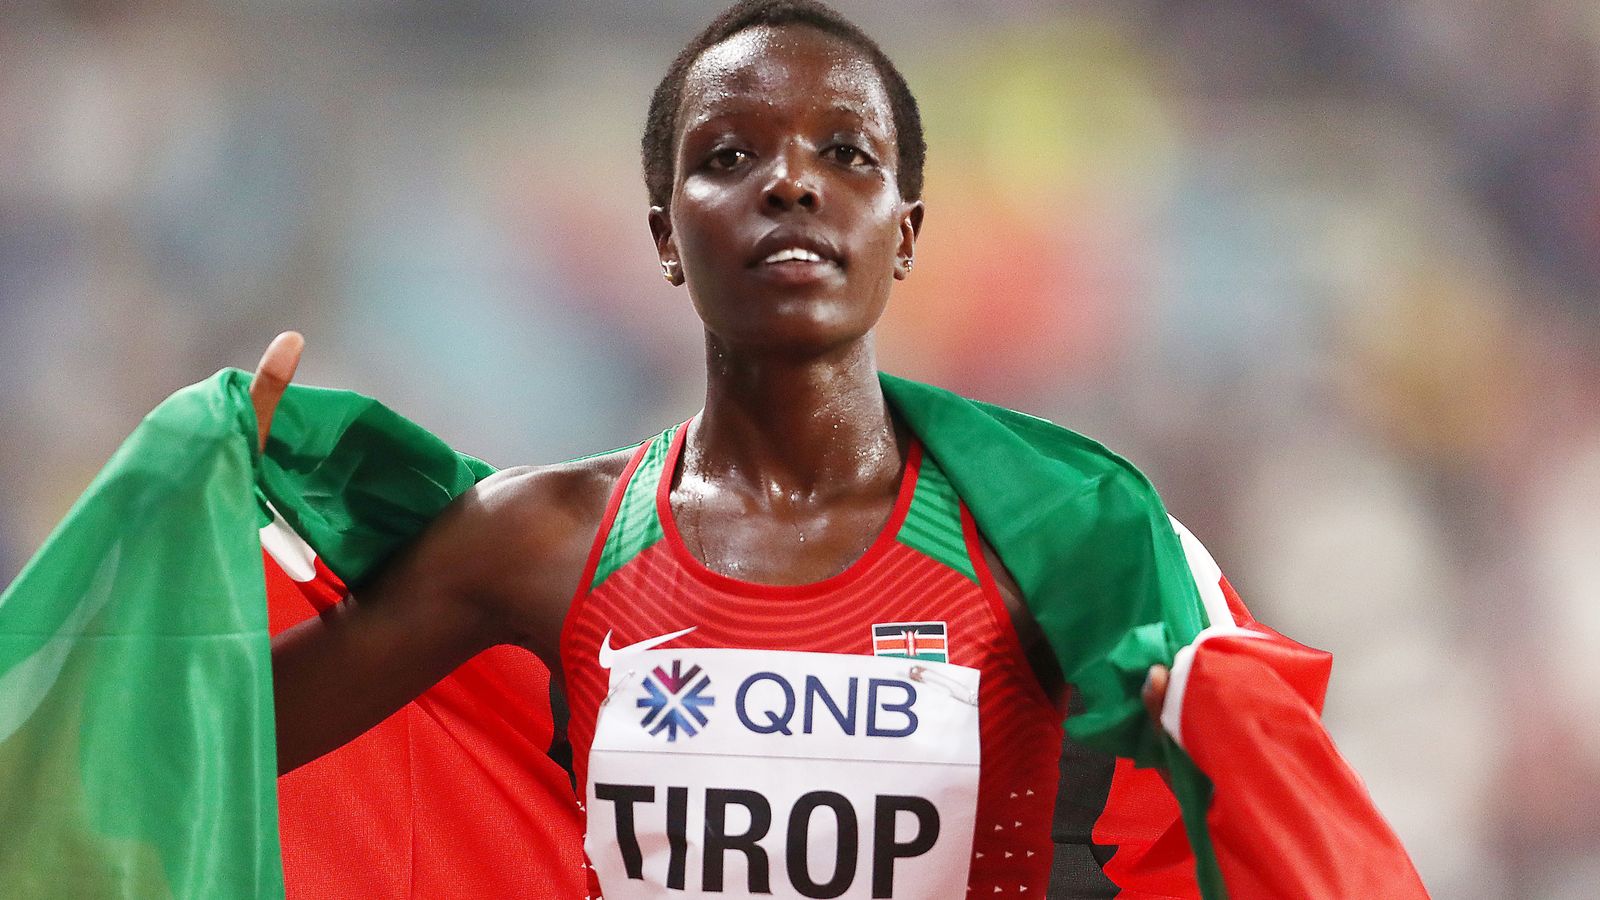 Agnes Tirop Twotime World Championships bronze medallist found dead